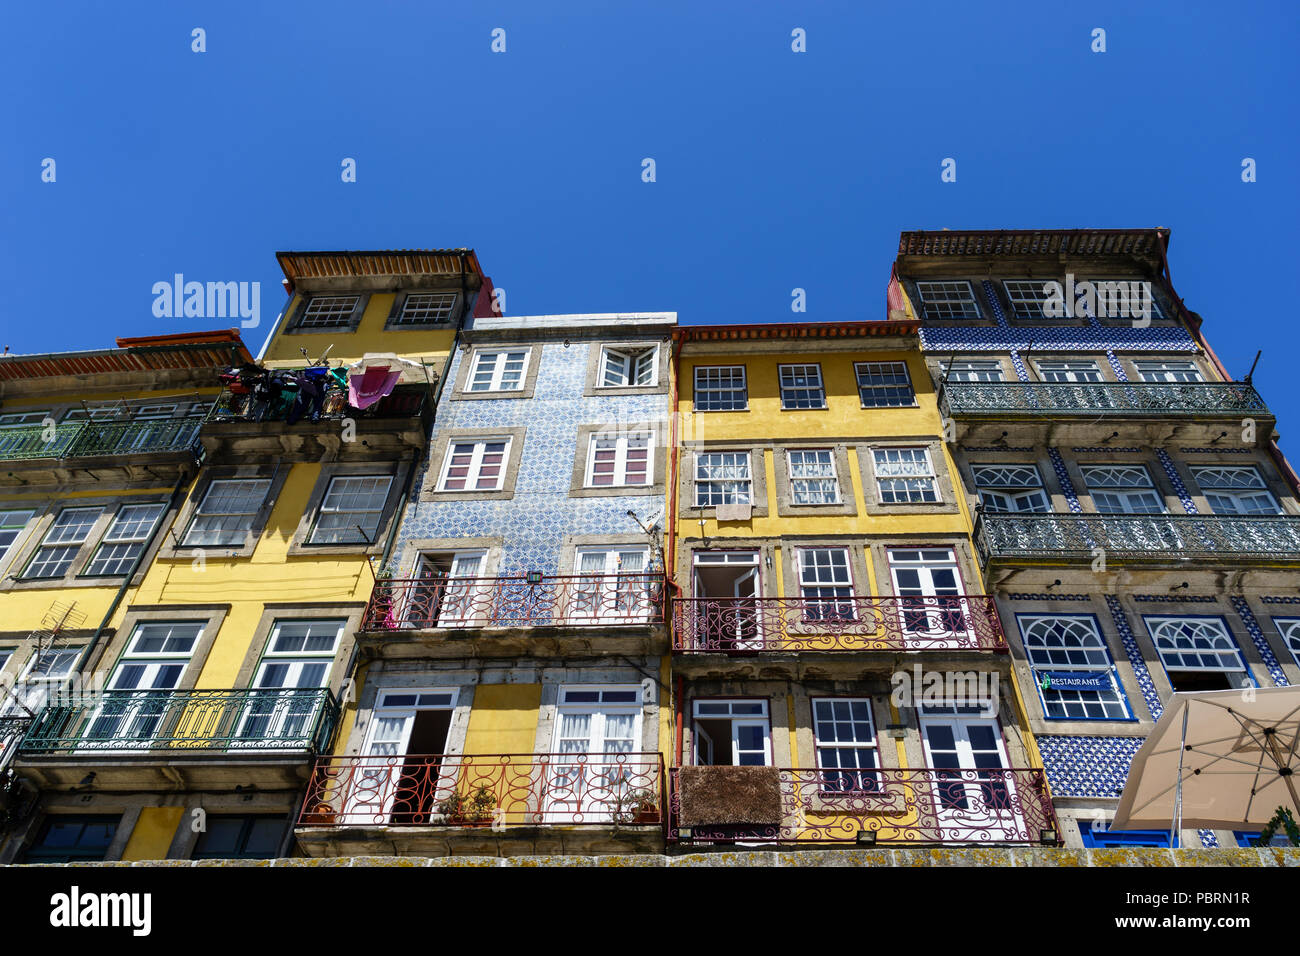 Abstraite de plusieurs étages typique des façades à Porto Portugal montrant des exemples de carreaux azulejos Banque D'Images